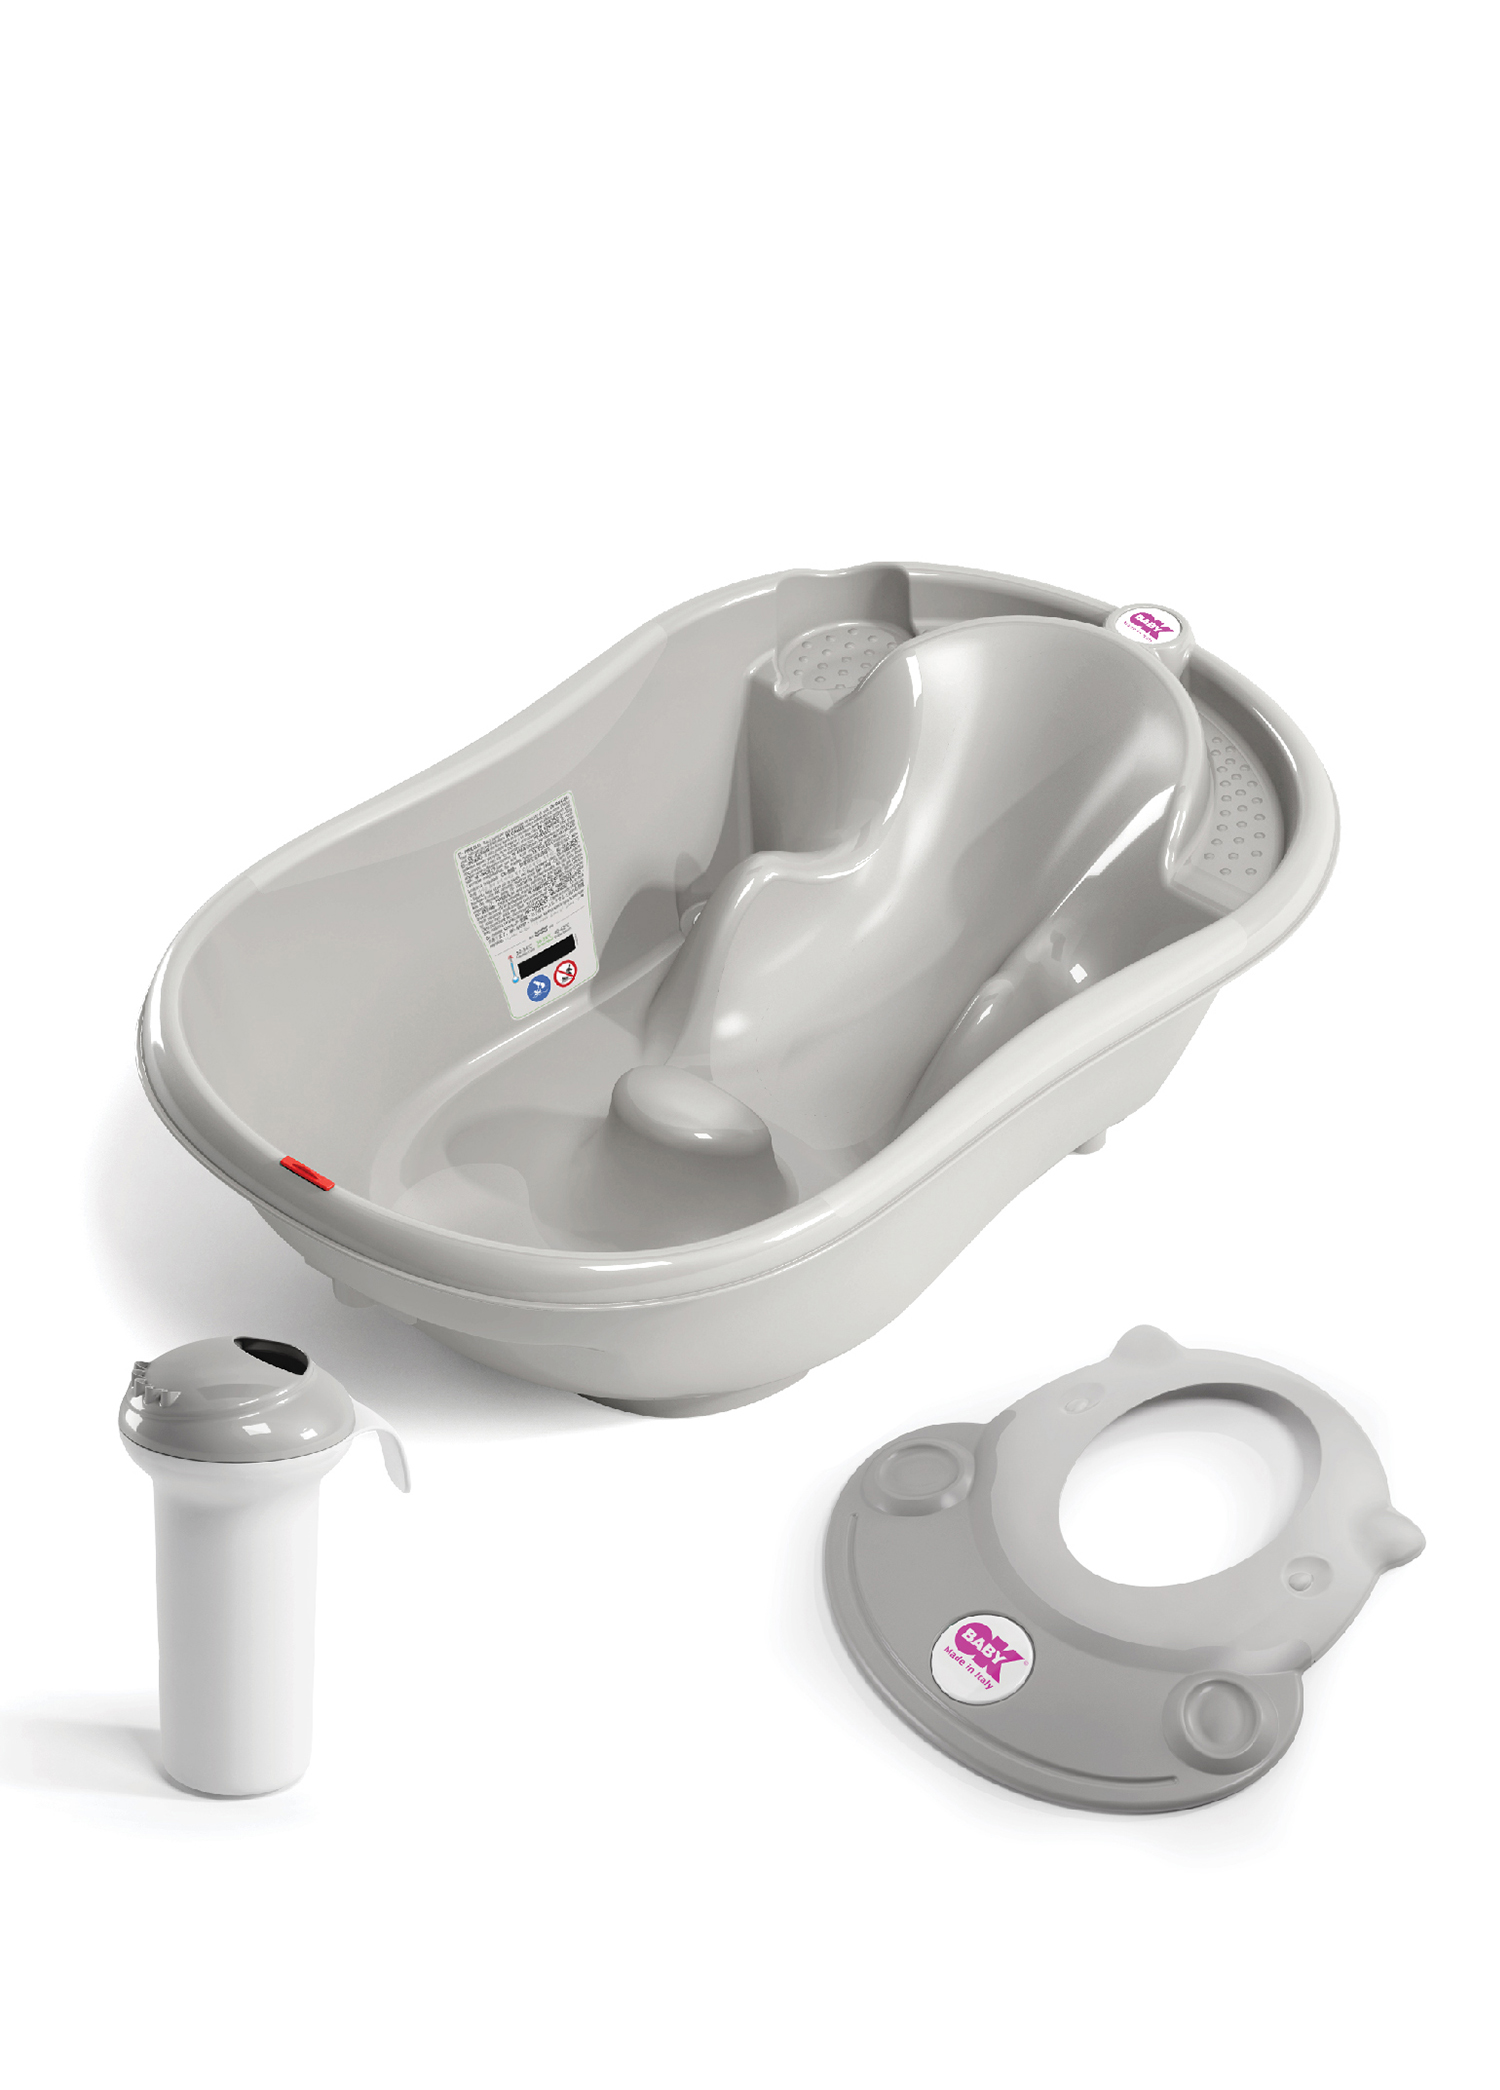 OkBaby - Onda Banyo Küveti ve Bebek Duşu Hippo Banyo Siperliği  - Gri